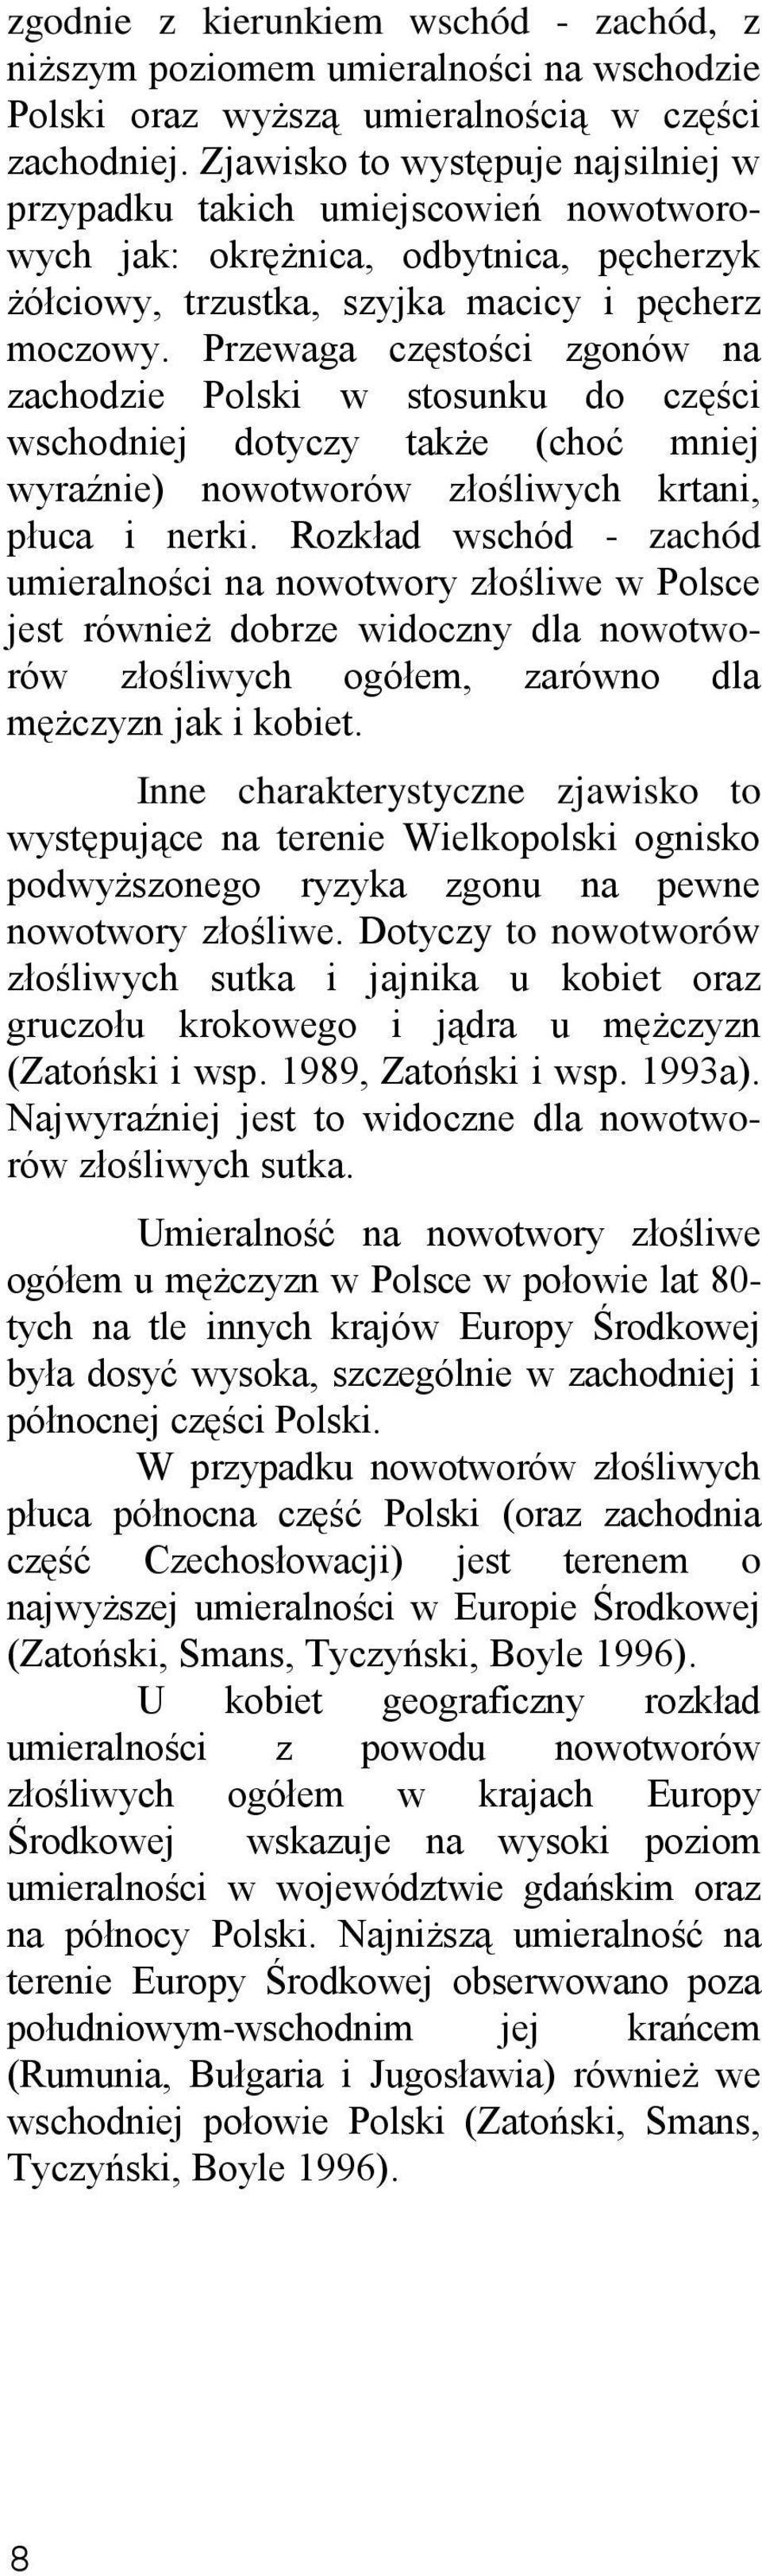 Przewaga częstości zgonów na zachodzie Polski w stosunku do części wschodniej dotyczy także (choć mniej wyraźnie) nowotworów złośliwych krtani, płuca i nerki.